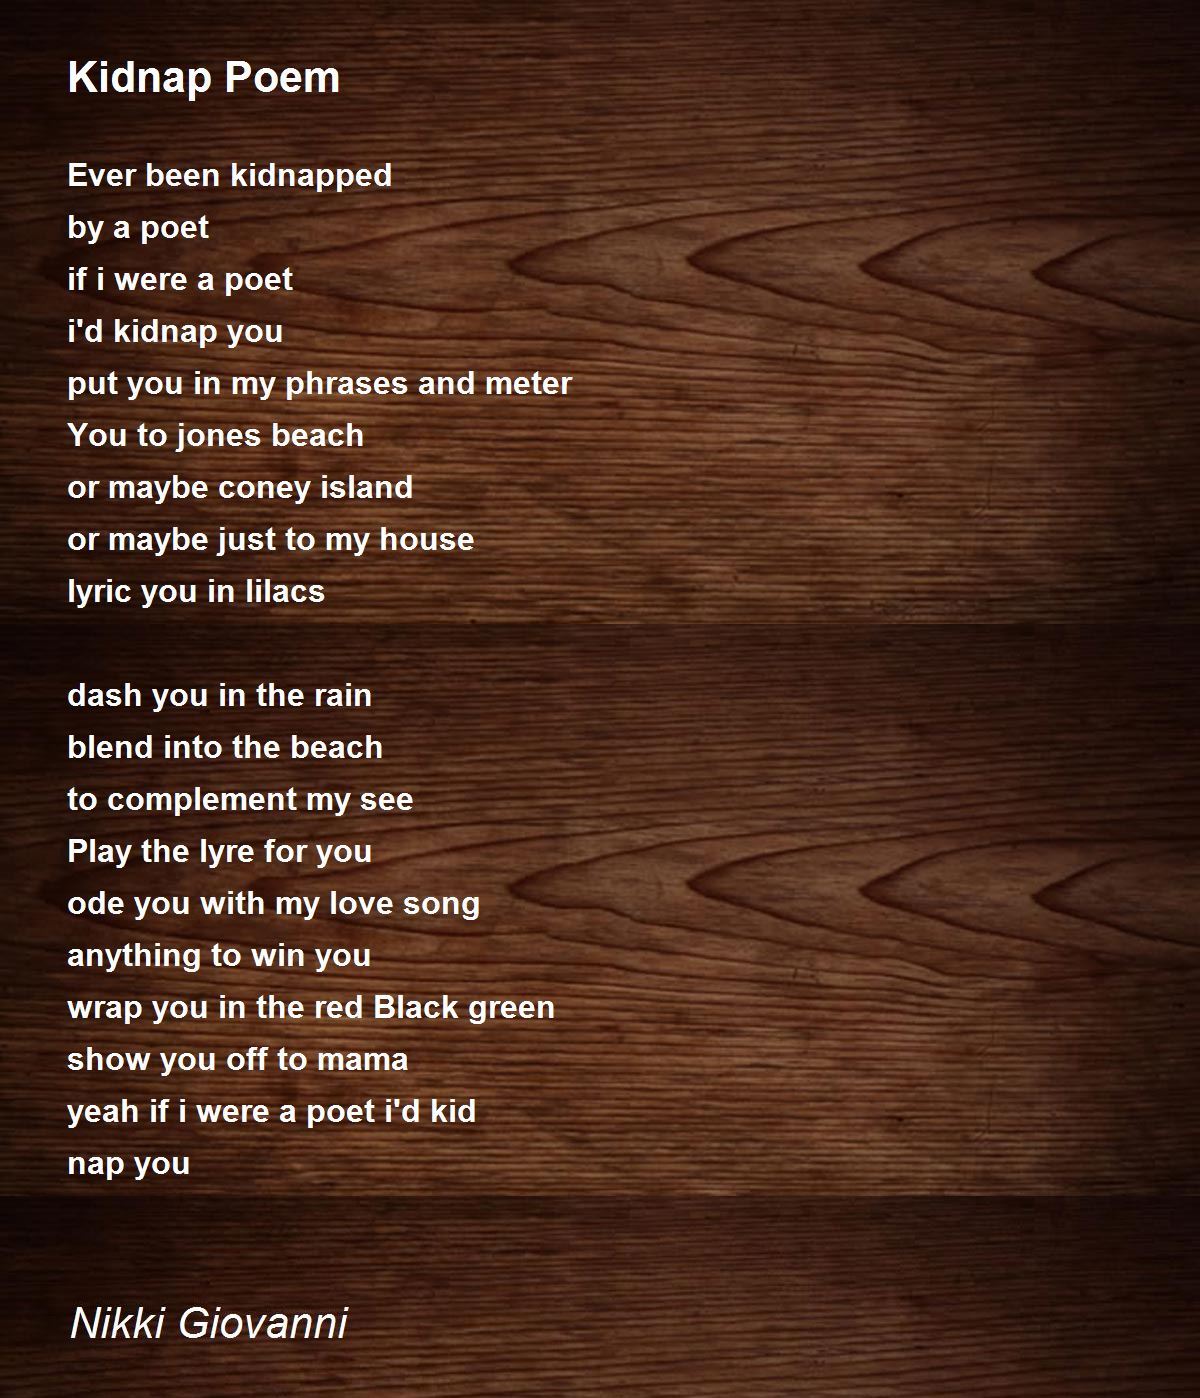 Kidnap Poem By Nikki Giovanni